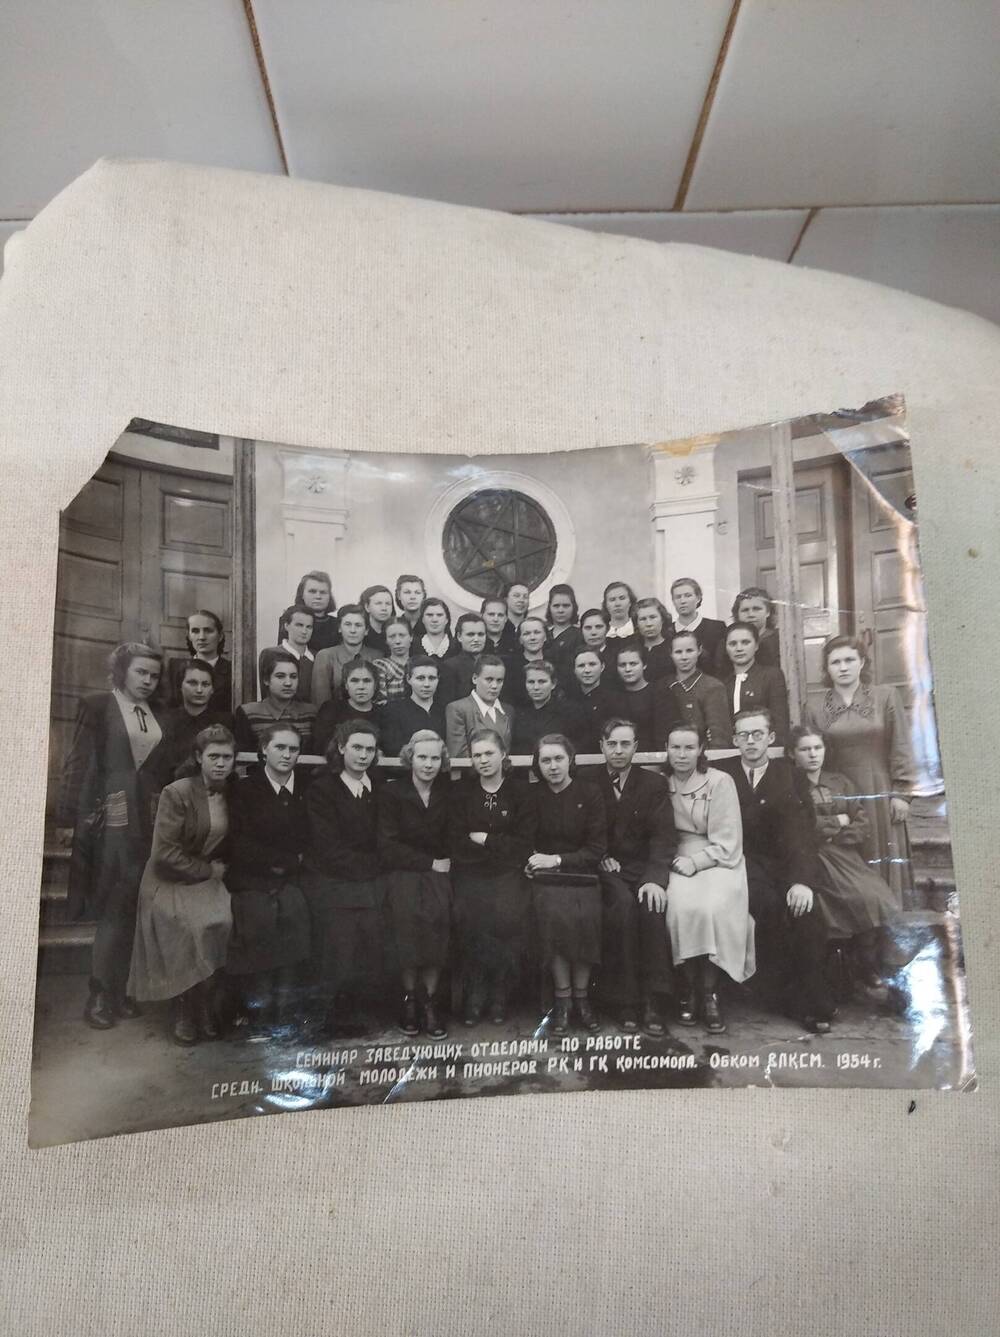 Фотография участников семинара заведующих отделами по работе школьной молодежи и пионеров РК и ГК комсомола. Обком ВЛКСМ 1954 год.